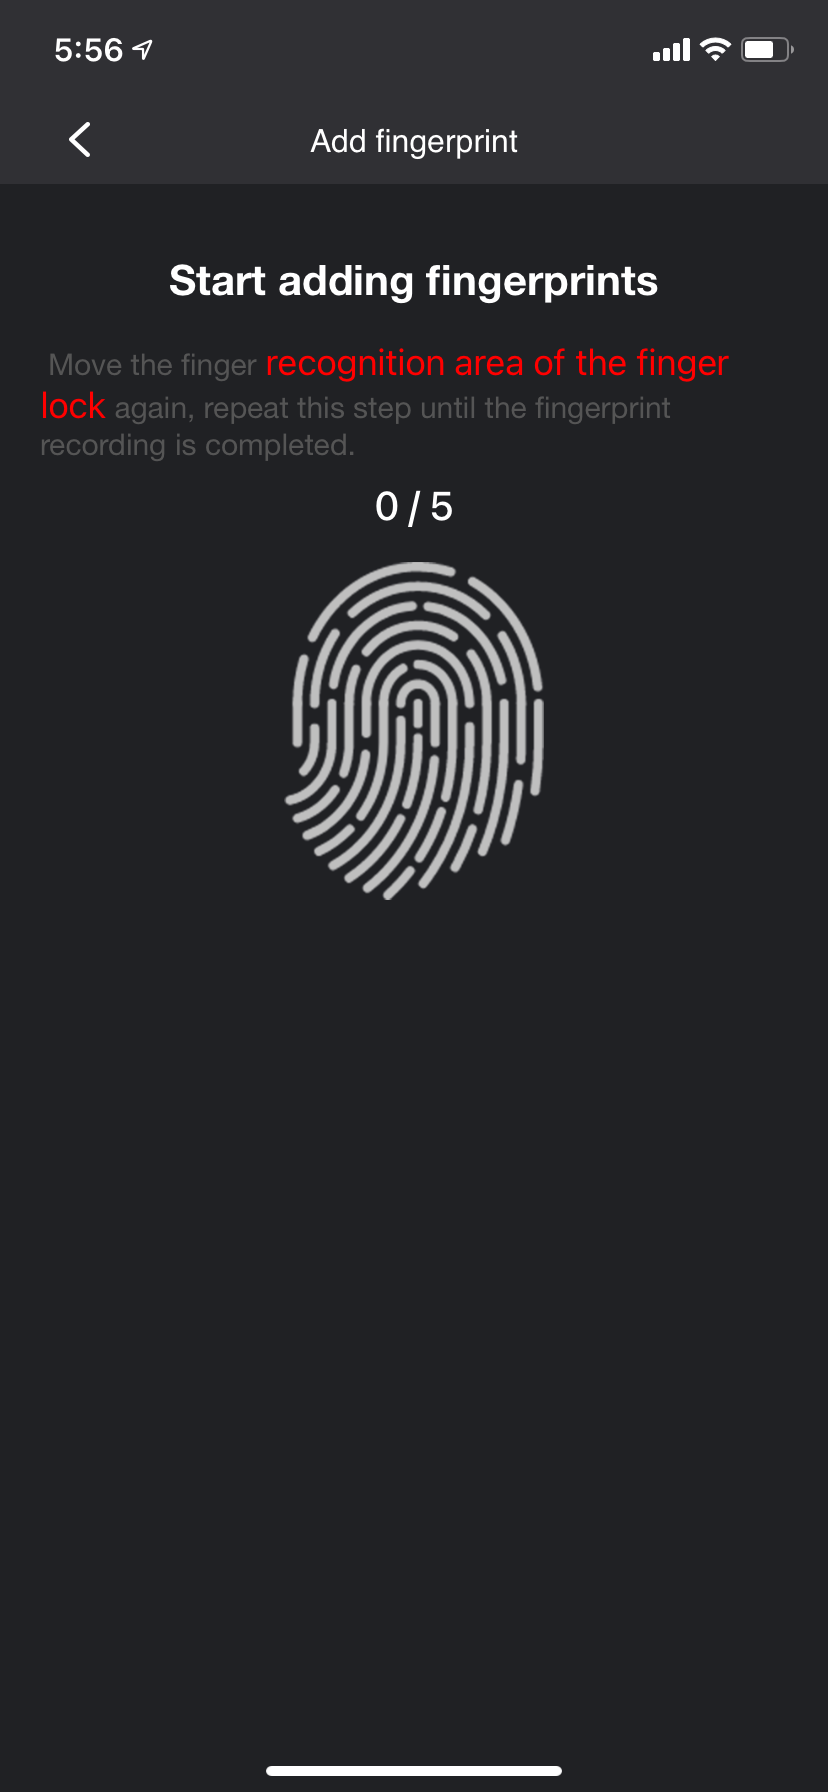 Adding a fingerprint